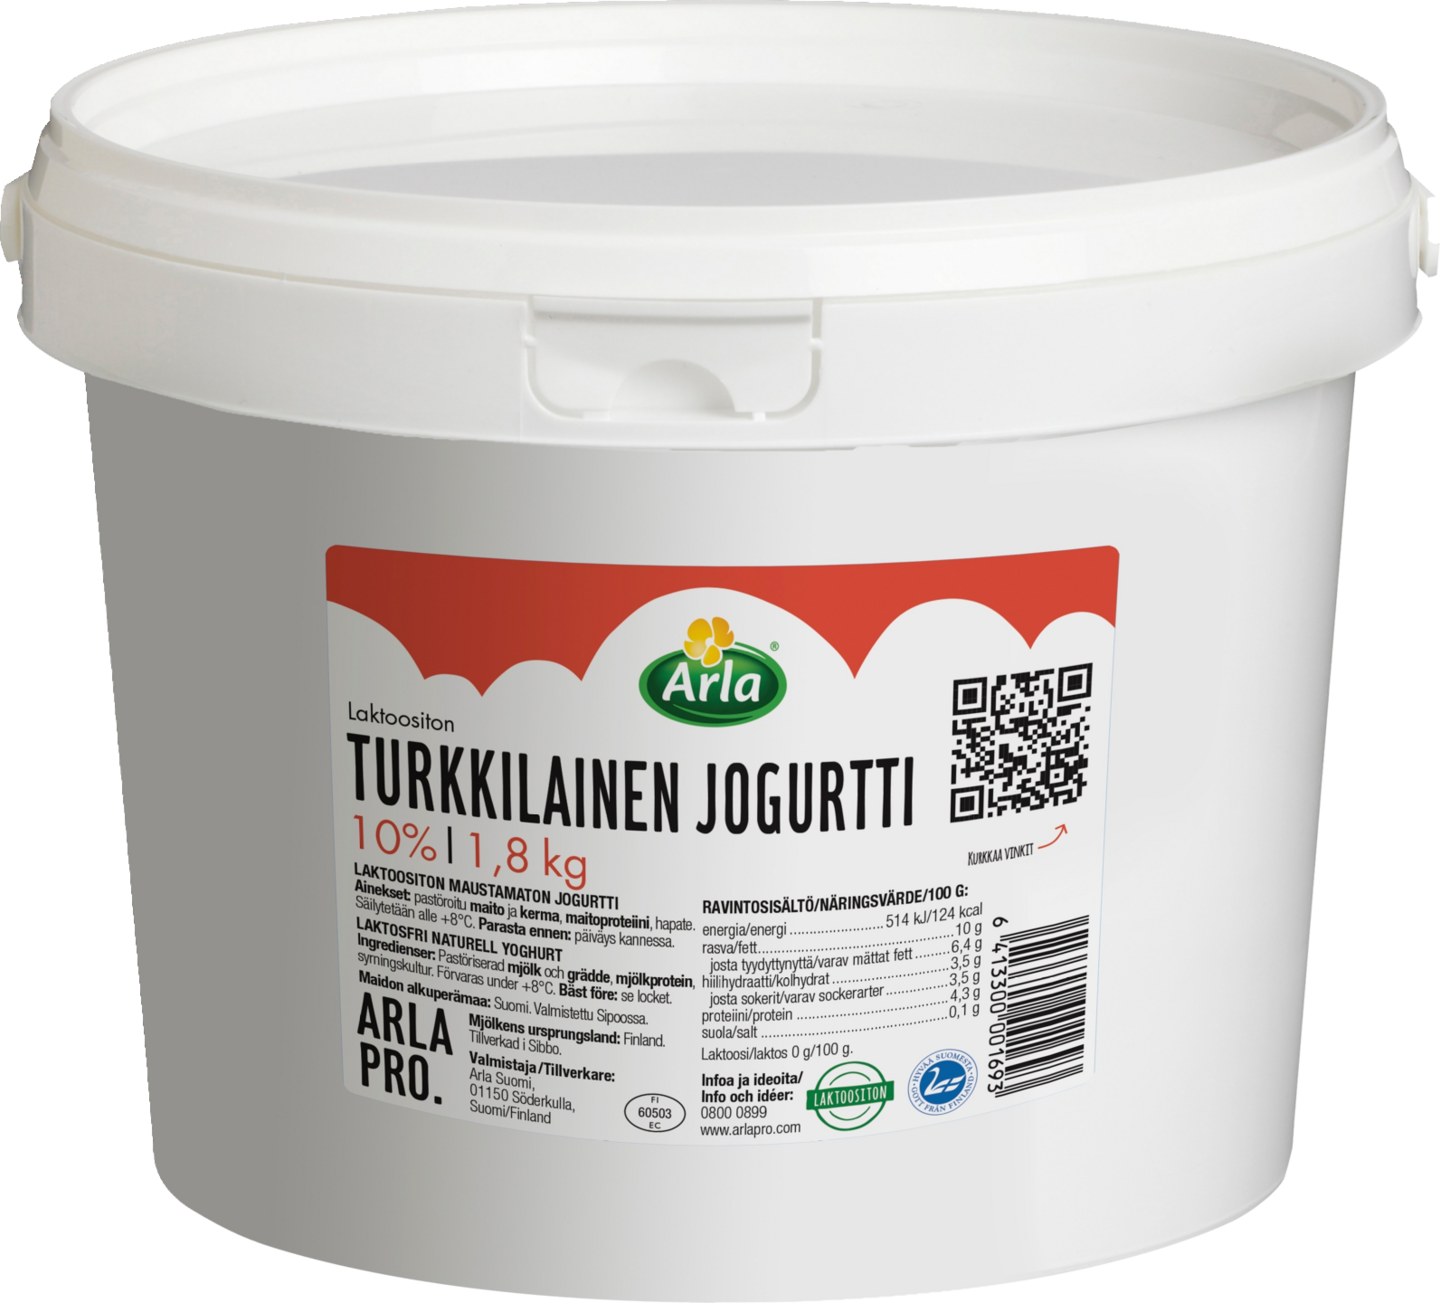 Arla turkkilainen jogurtti 10% 1,8kg laktoositon